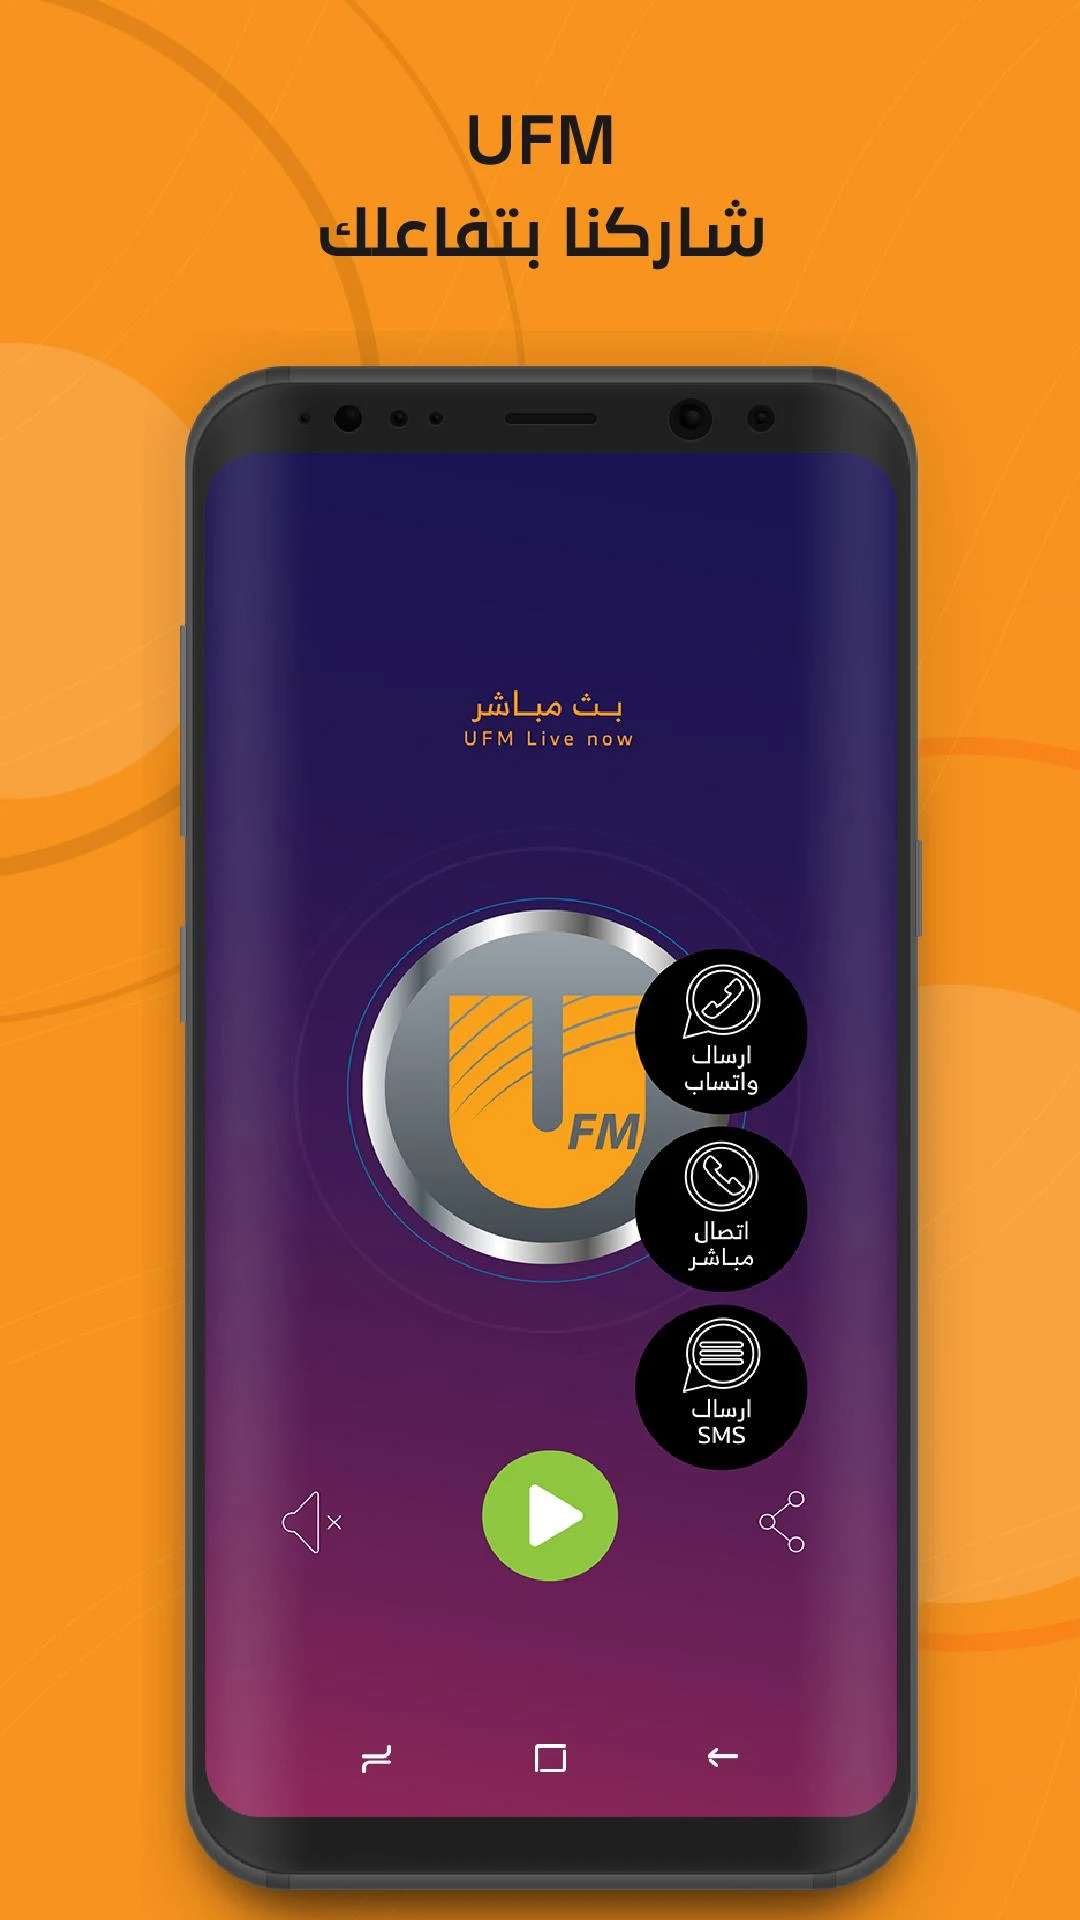 تطبيق إذاعة UFM للبث المباشرة في السعودية